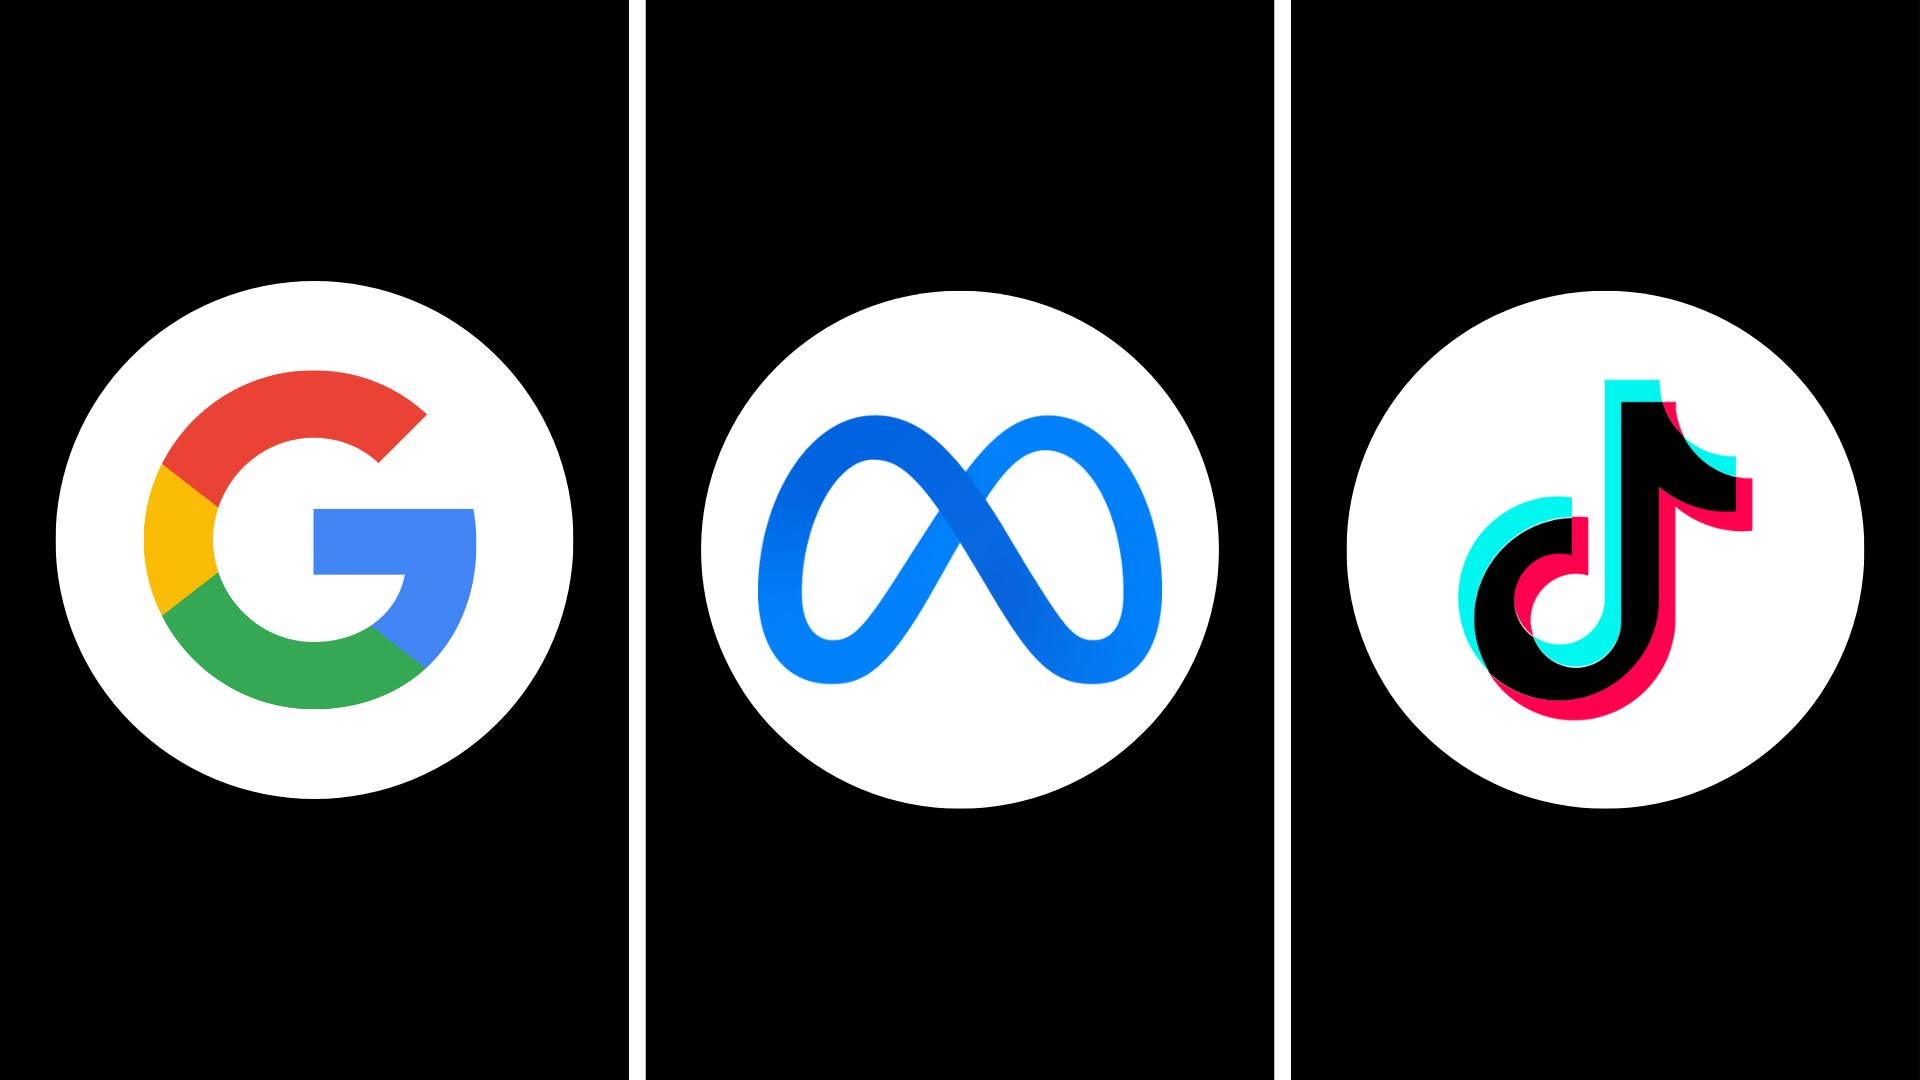 The logos of Google, Meta, and TikTok.